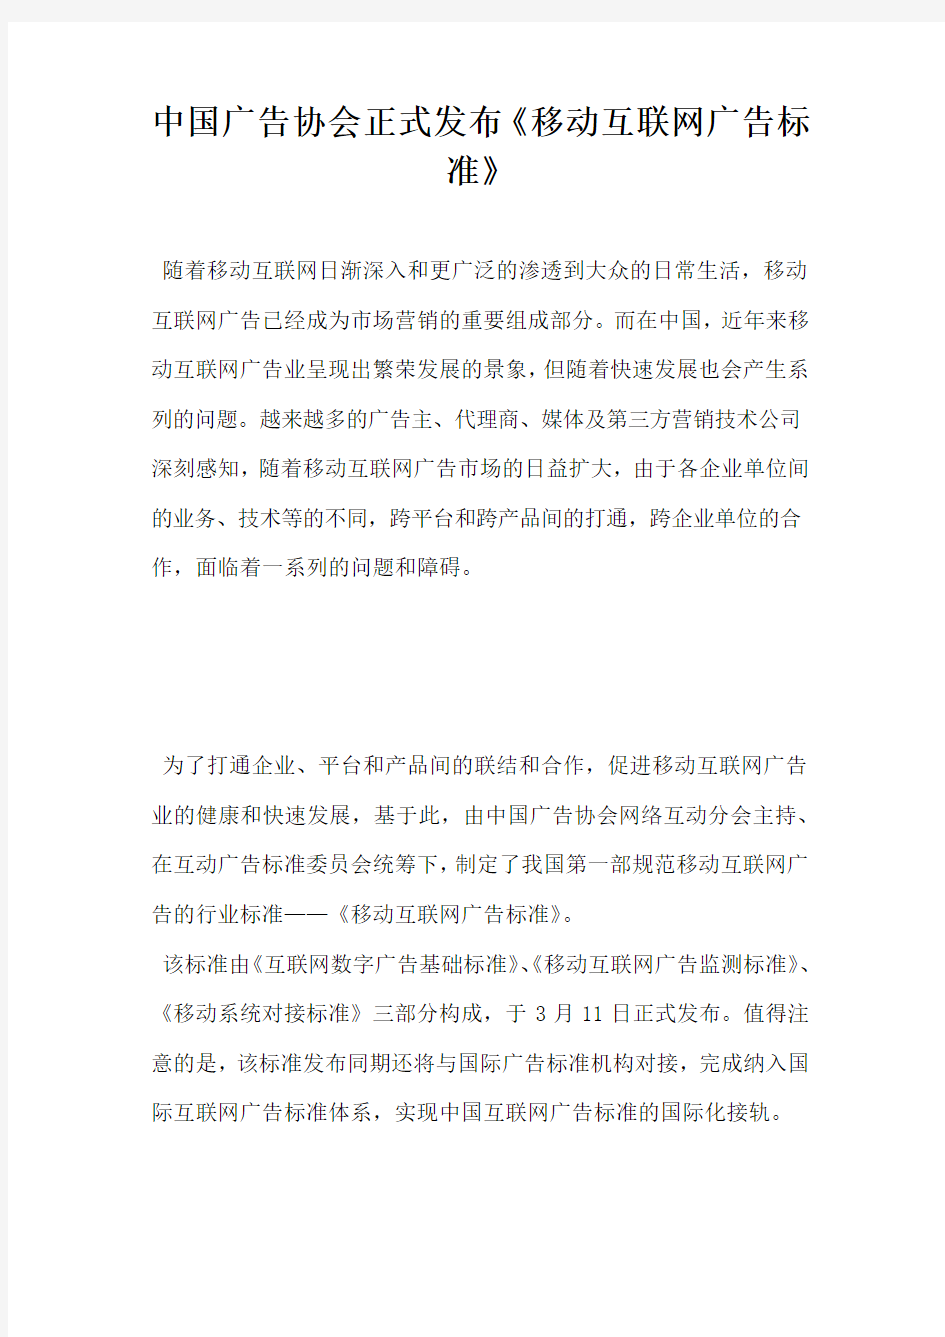 中国广告协会正式发布移动互联网广告标准